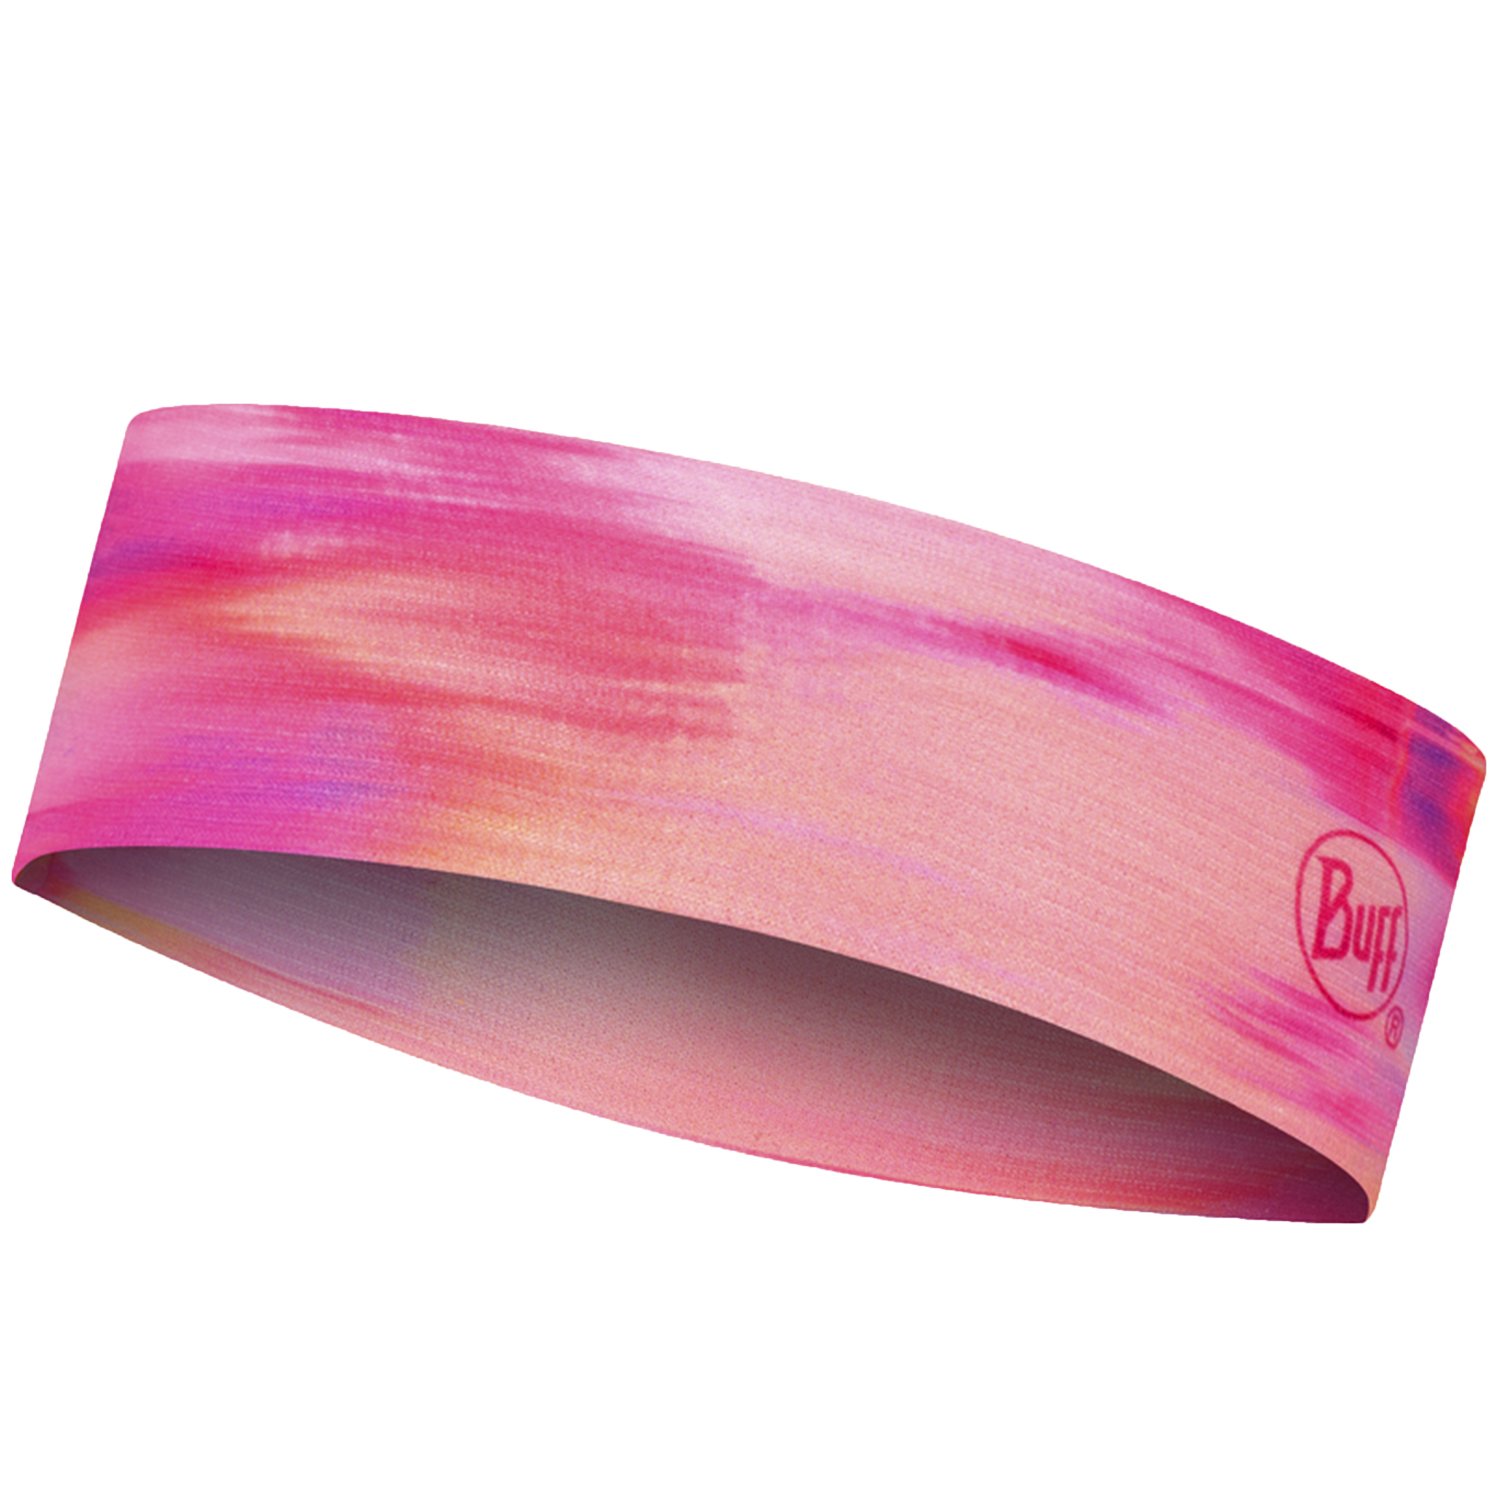 Повязка Buff CoolNet UV+ Slim Headband Sish Pink Fluor, 128749.522.10.00 купить на ЖДБЗ.ру